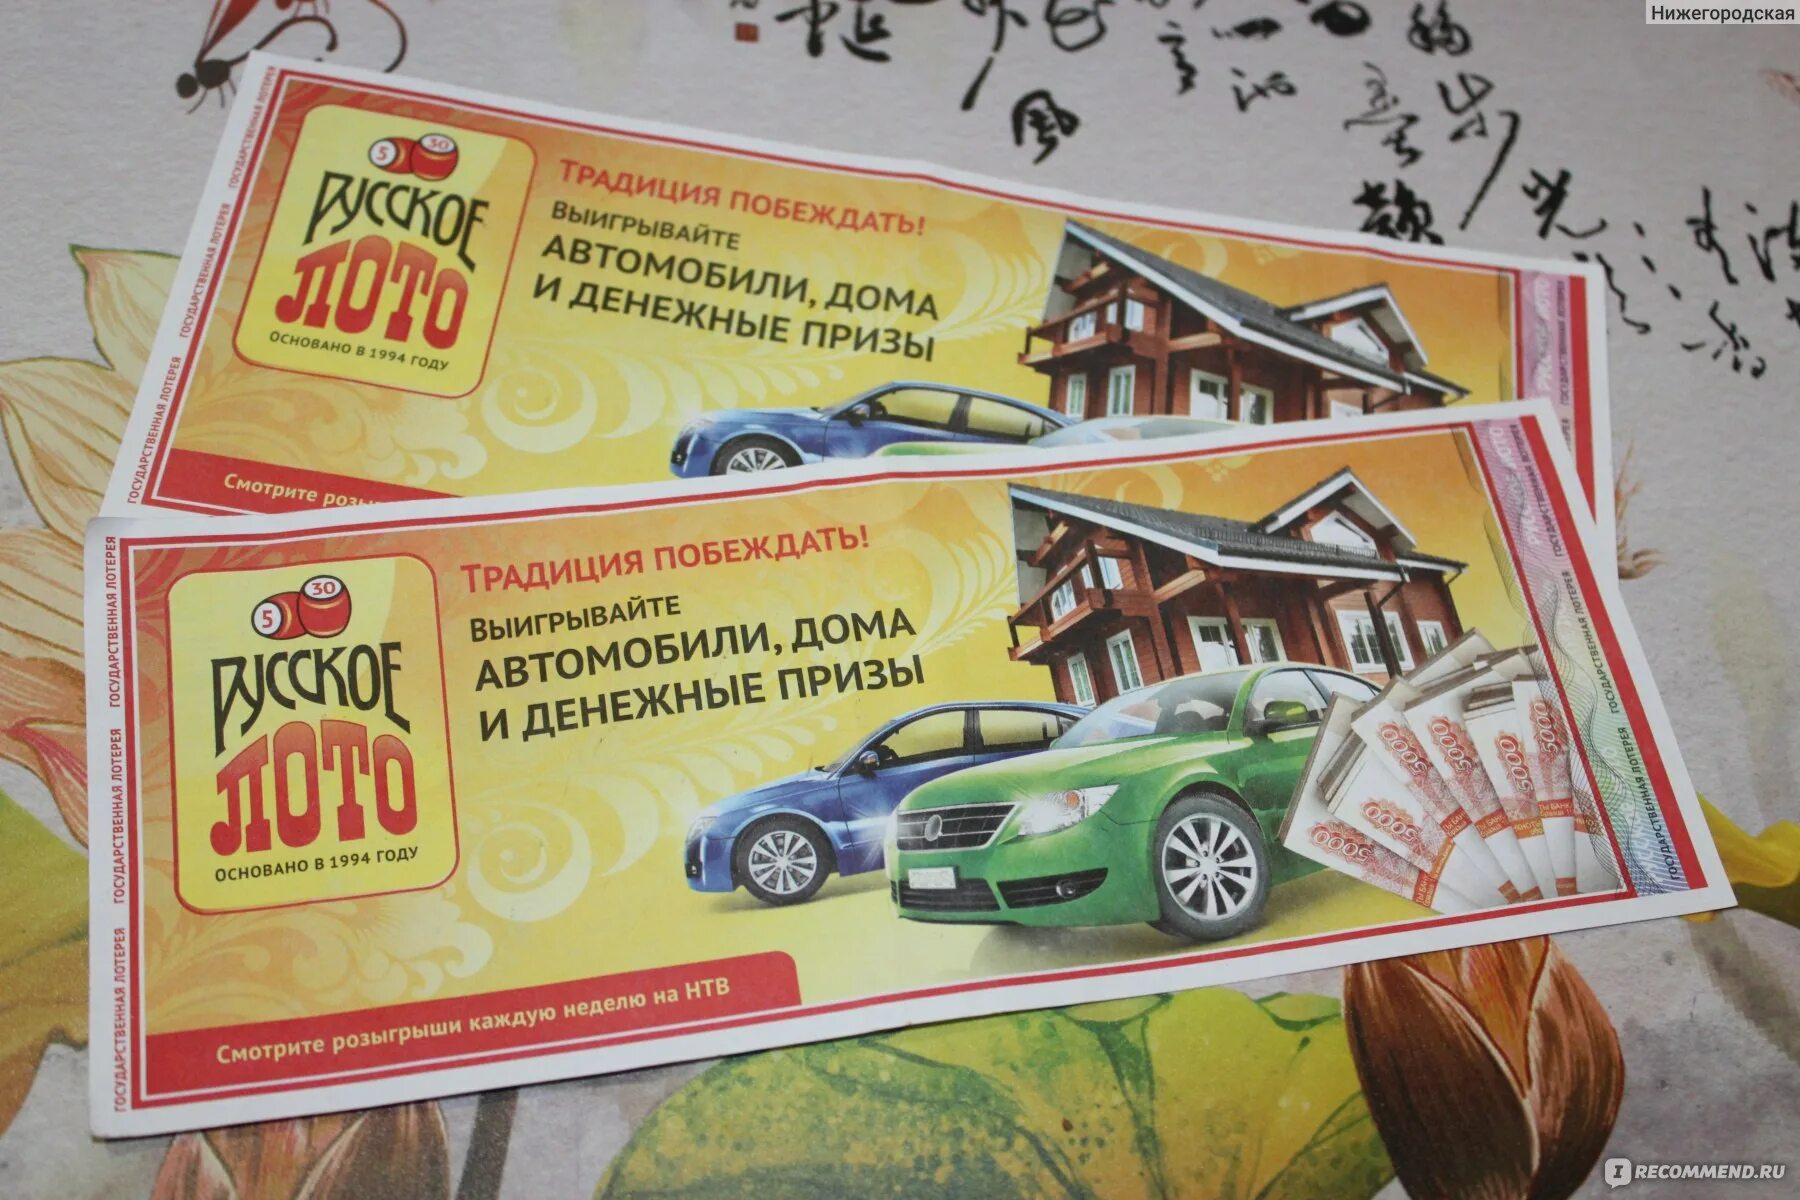 Выигрышные лотереи русское лото. Автомобили дома и денежные призы. Русское лото автомобили и денежные призы. Призы лотереи русское лото. Русское лото автомобили.